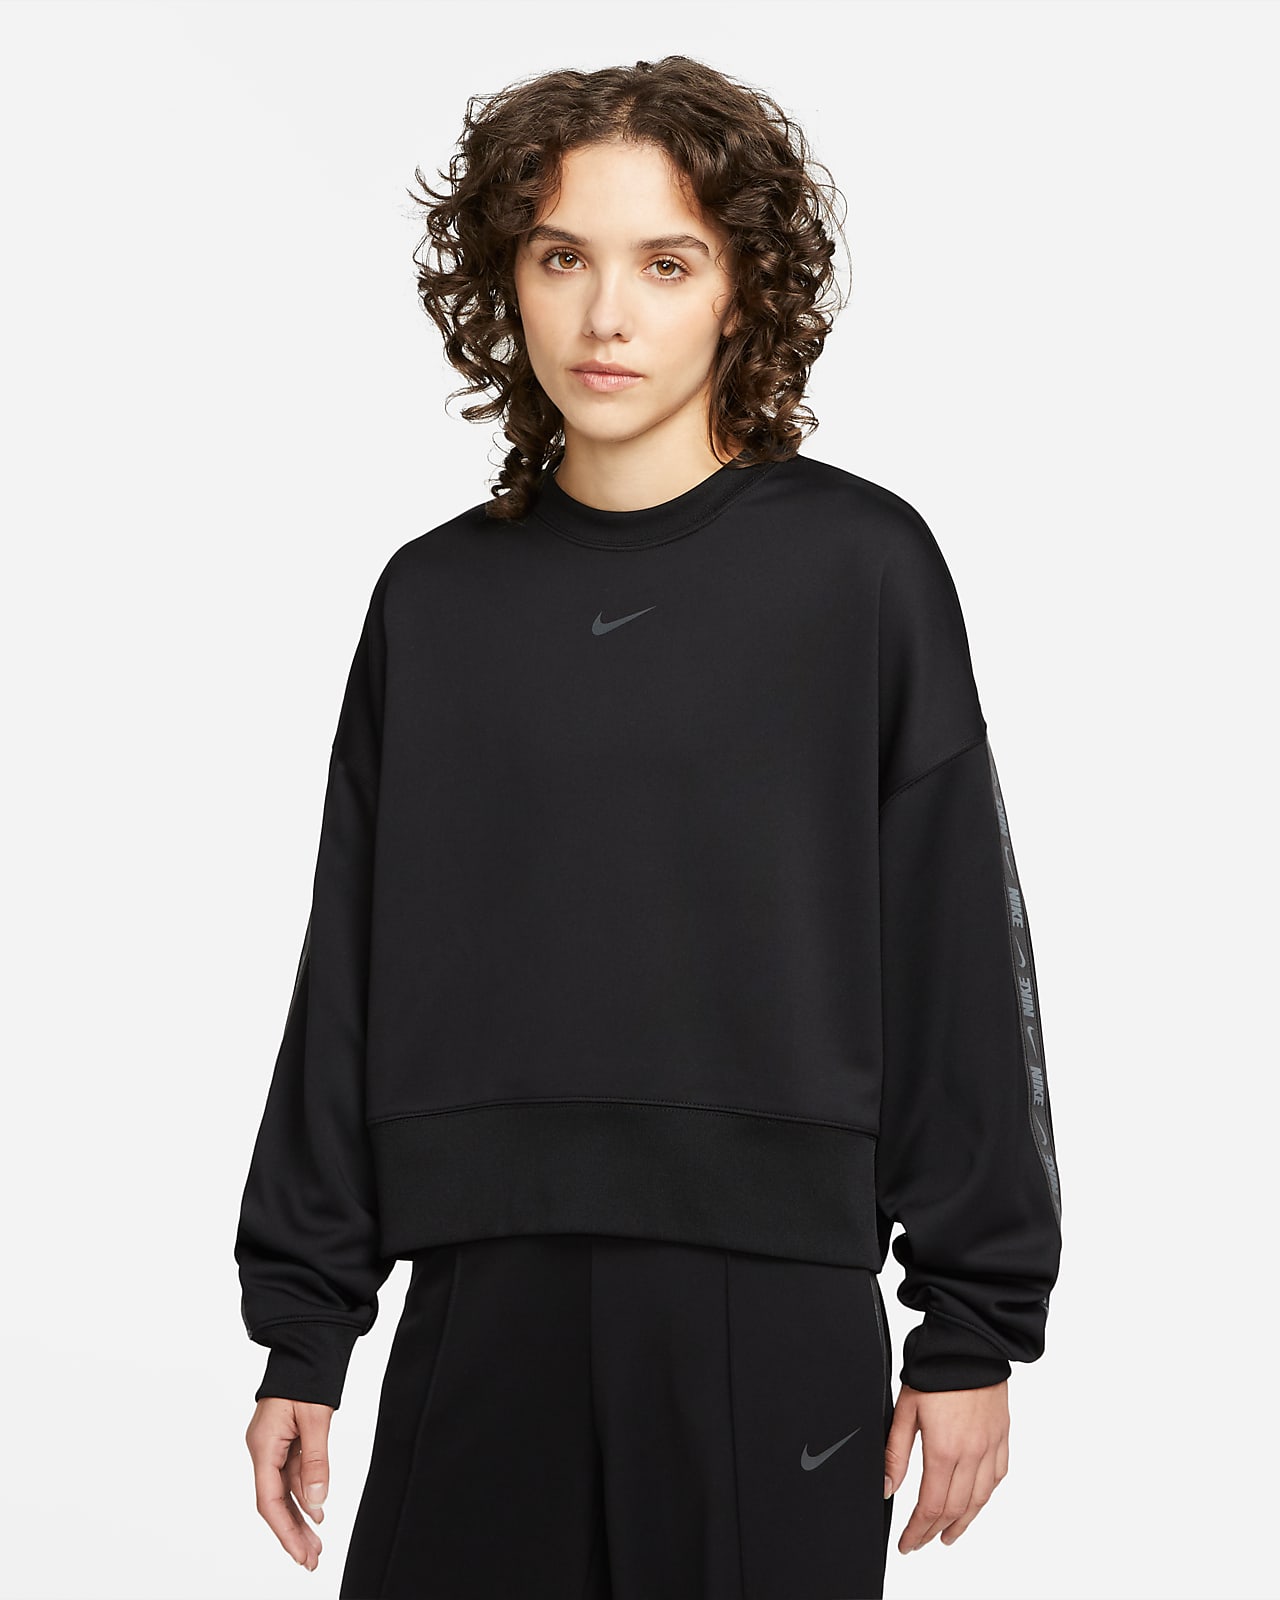 Nike Sportswear Women's Oversized Sweatshirt. Nike BG